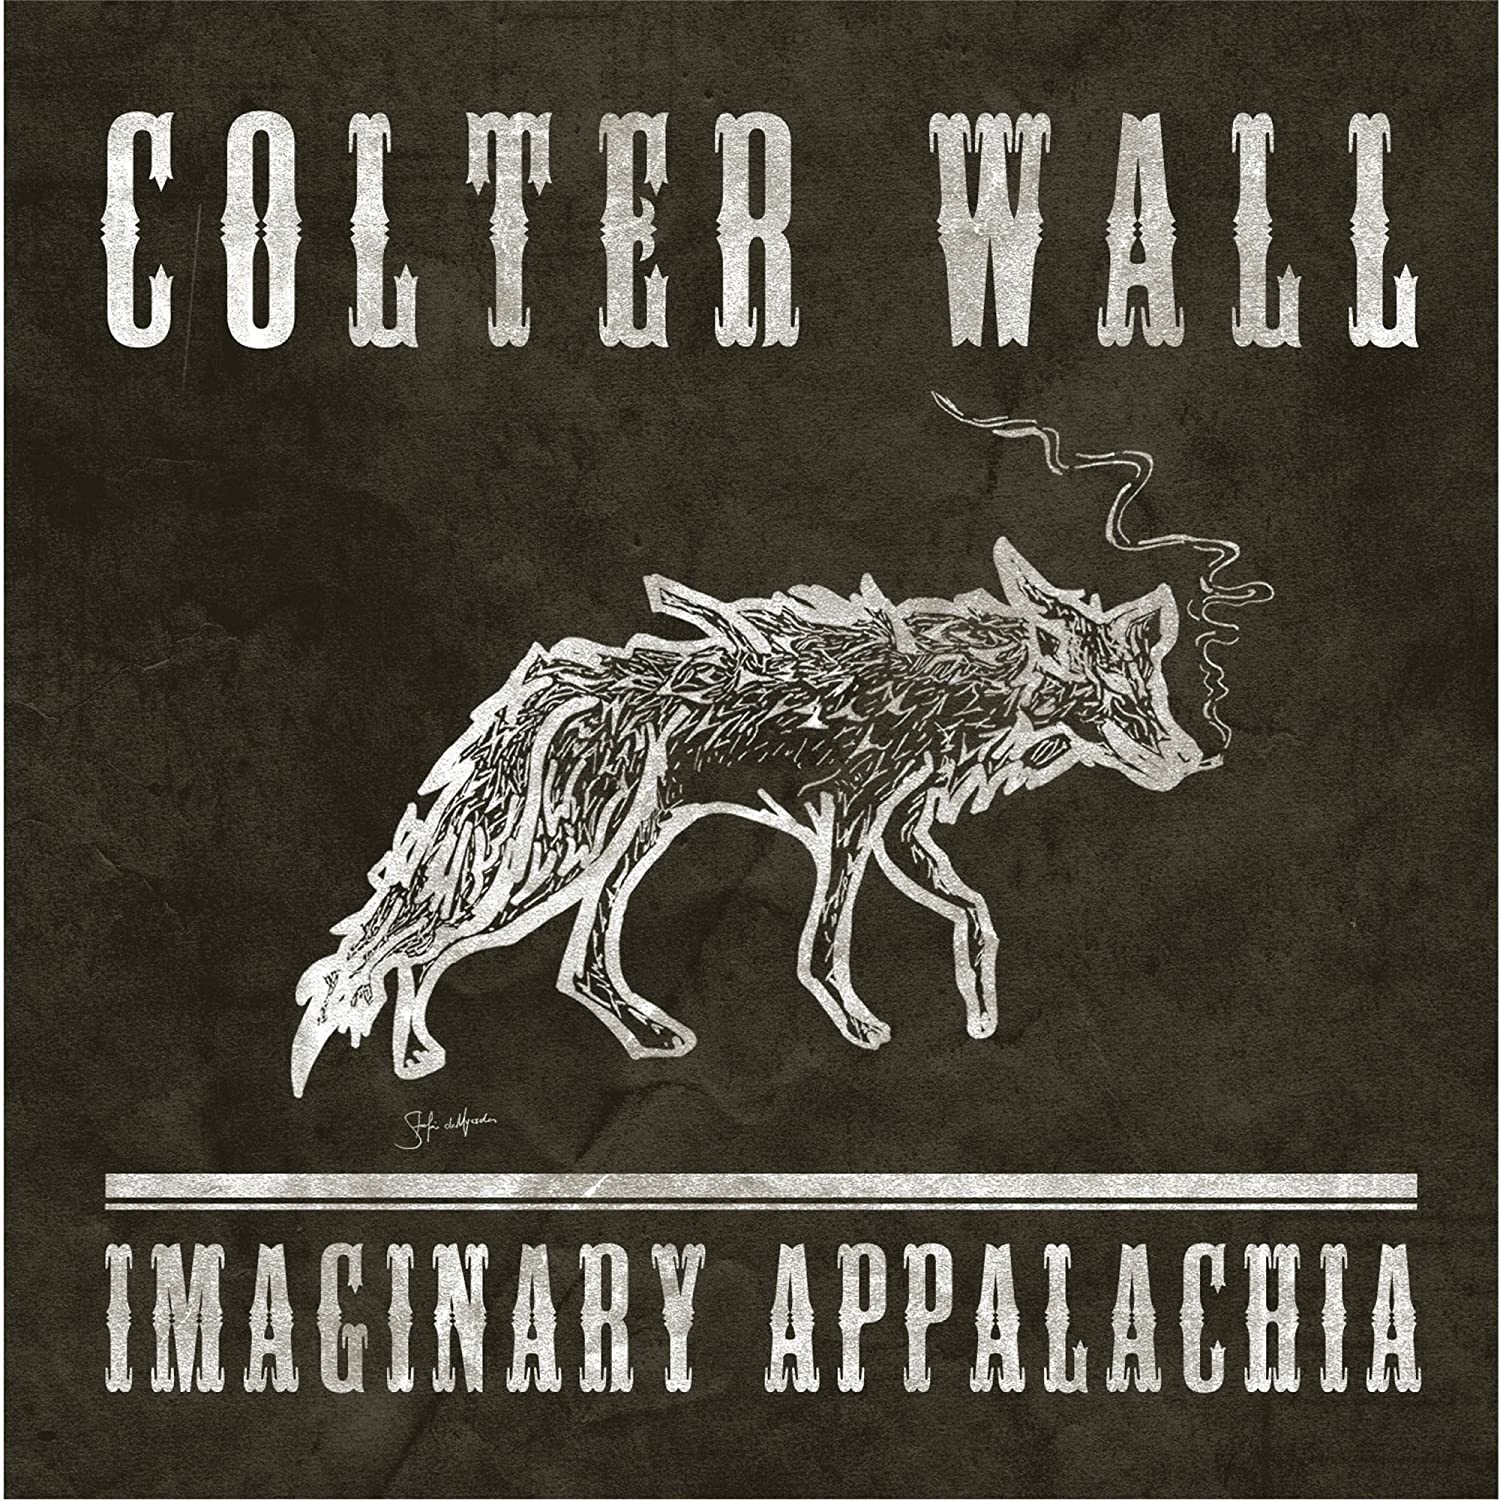 Colter Wall - Imaginary Appalachia